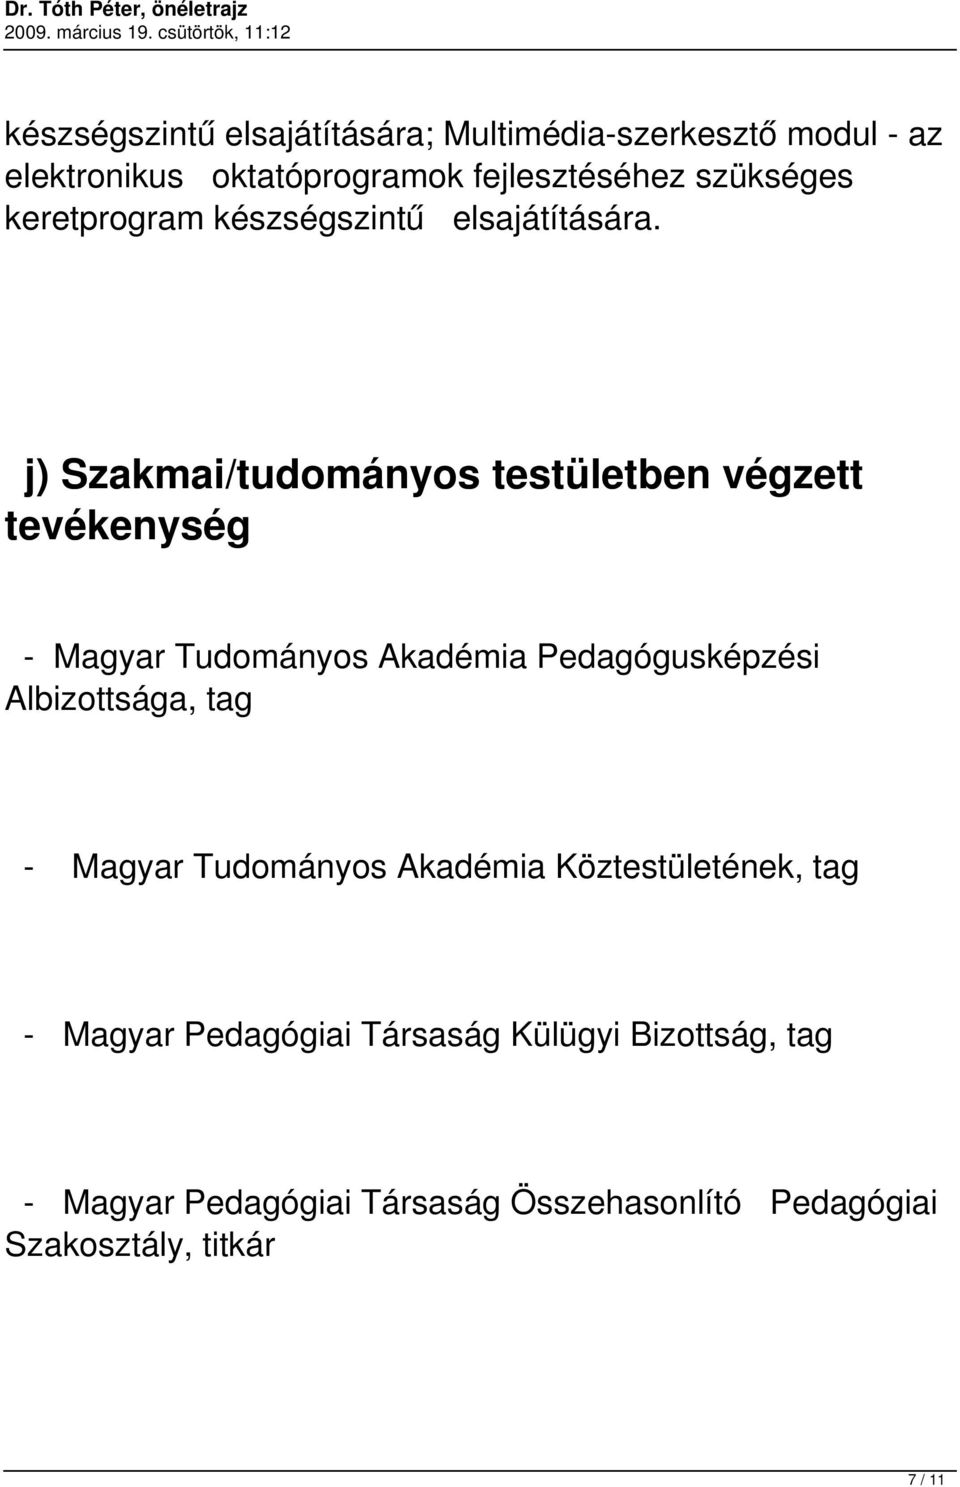 j) Szakmai/tudományos testületben végzett tevékenység - Magyar Tudományos Akadémia Pedagógusképzési Albizottsága,